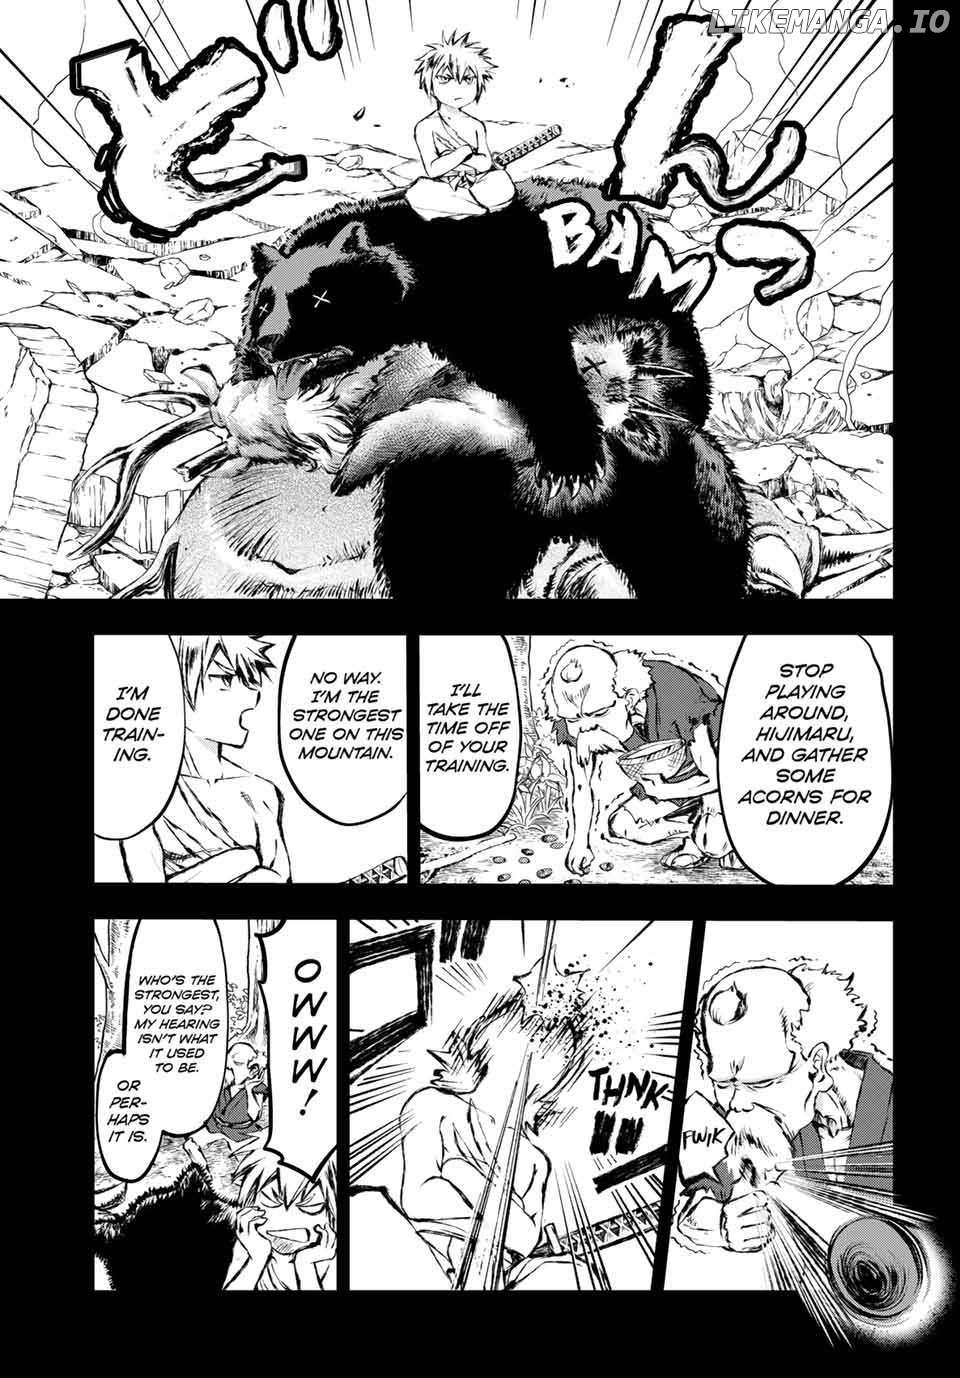 Katana Beast - Page 1